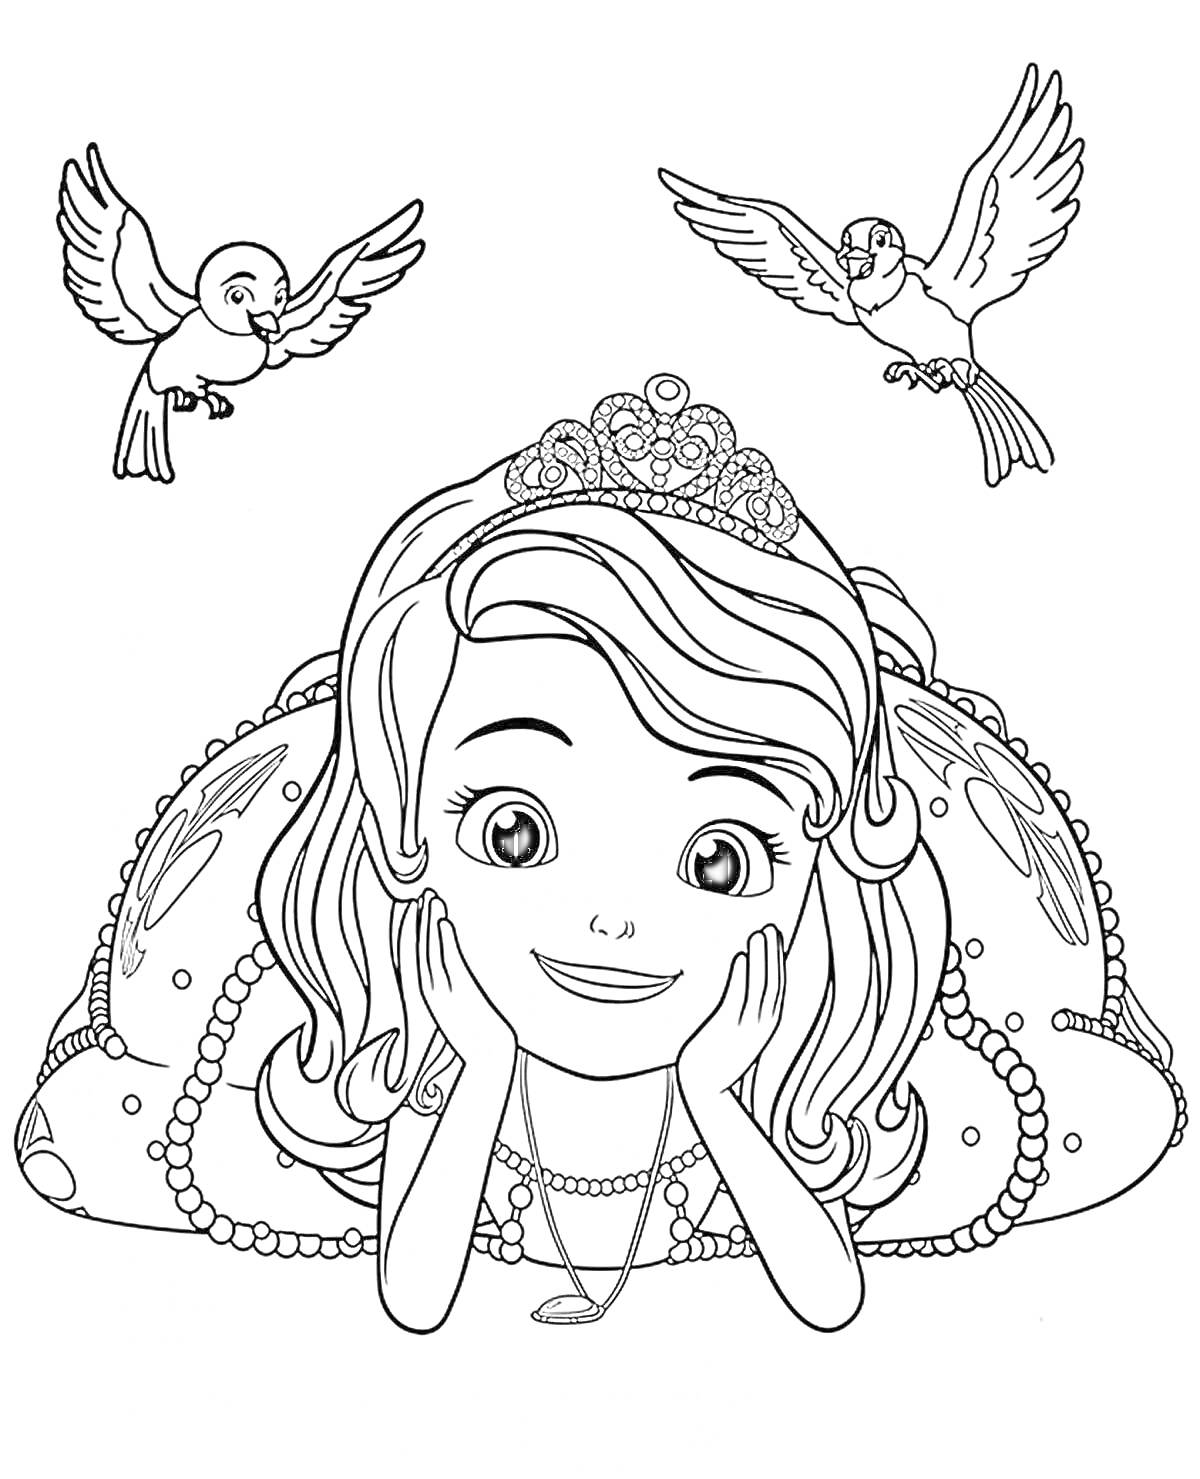 Раскраска София принцесса с птицами, лежит на подушке, украшенной драгоценностями